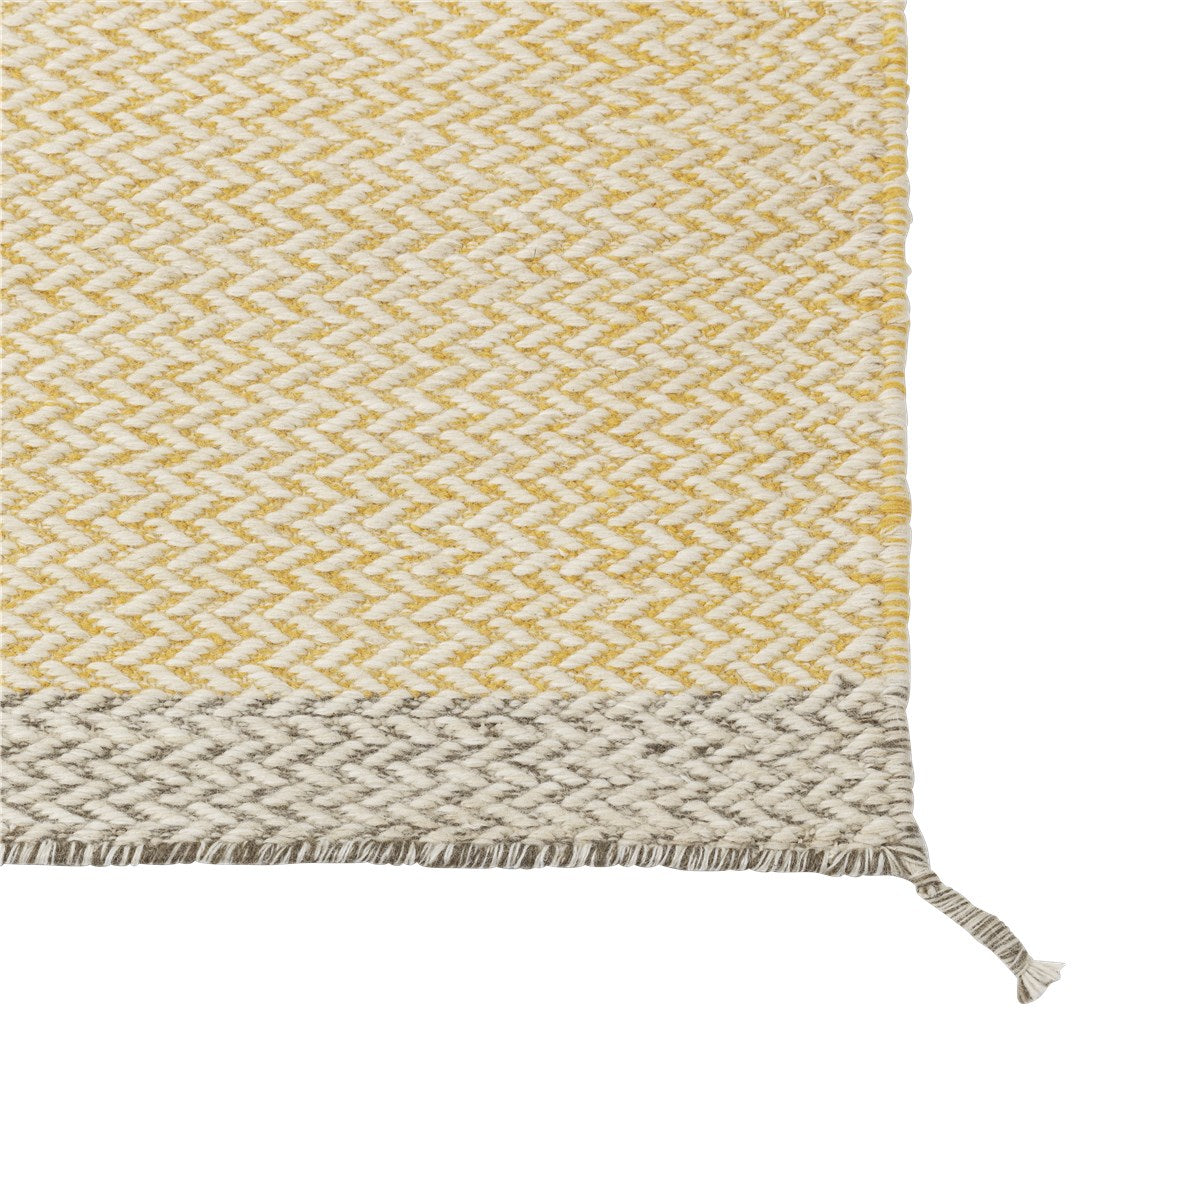 Ply Rug 層次．羊毛紡織地毯